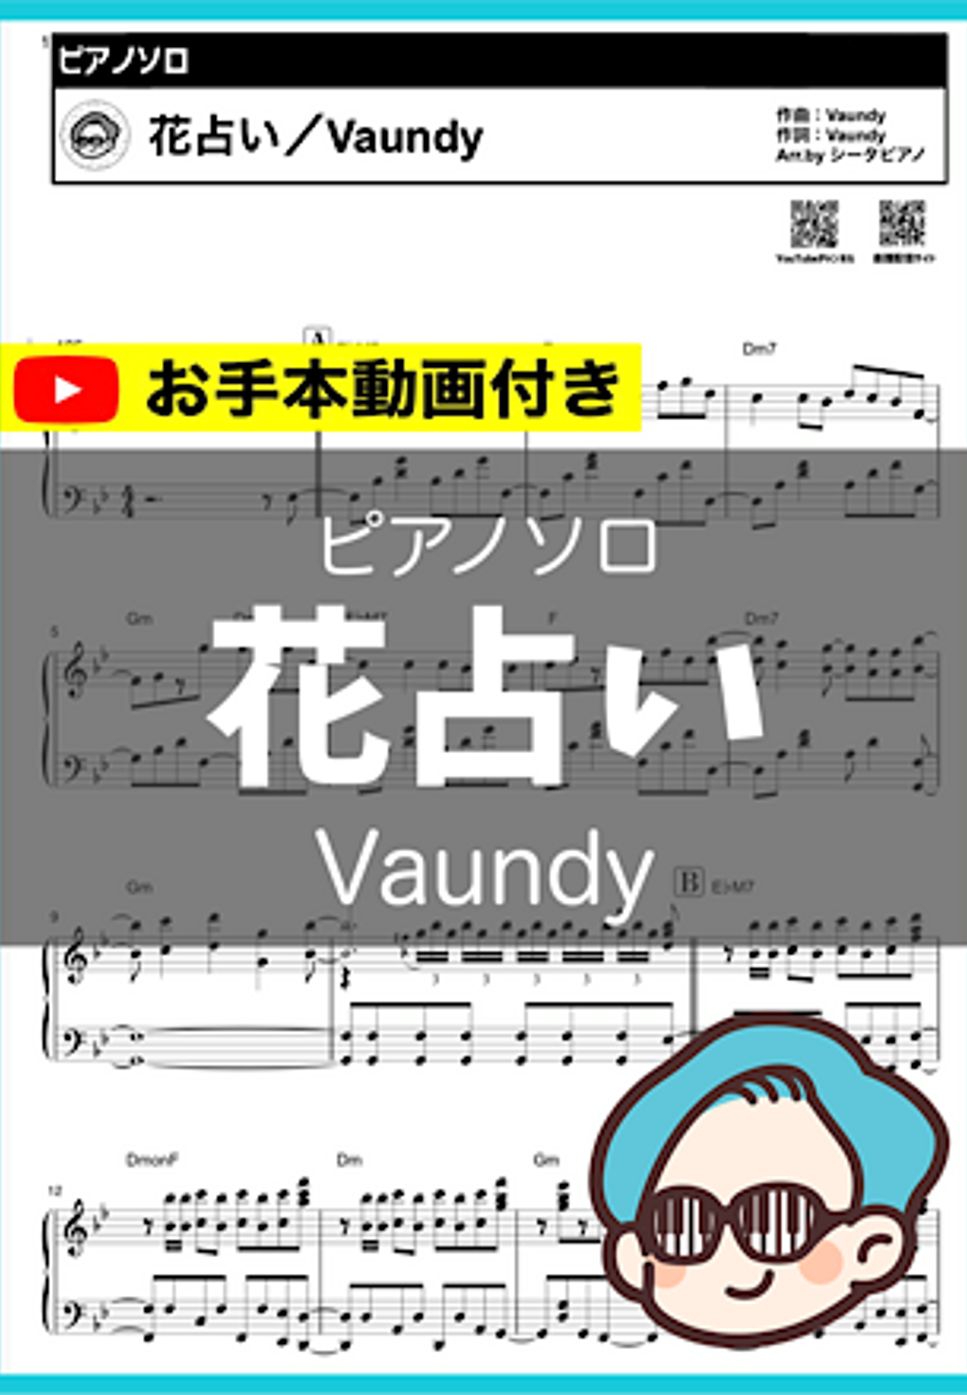 Vaundy - 花占い by シータピアノ